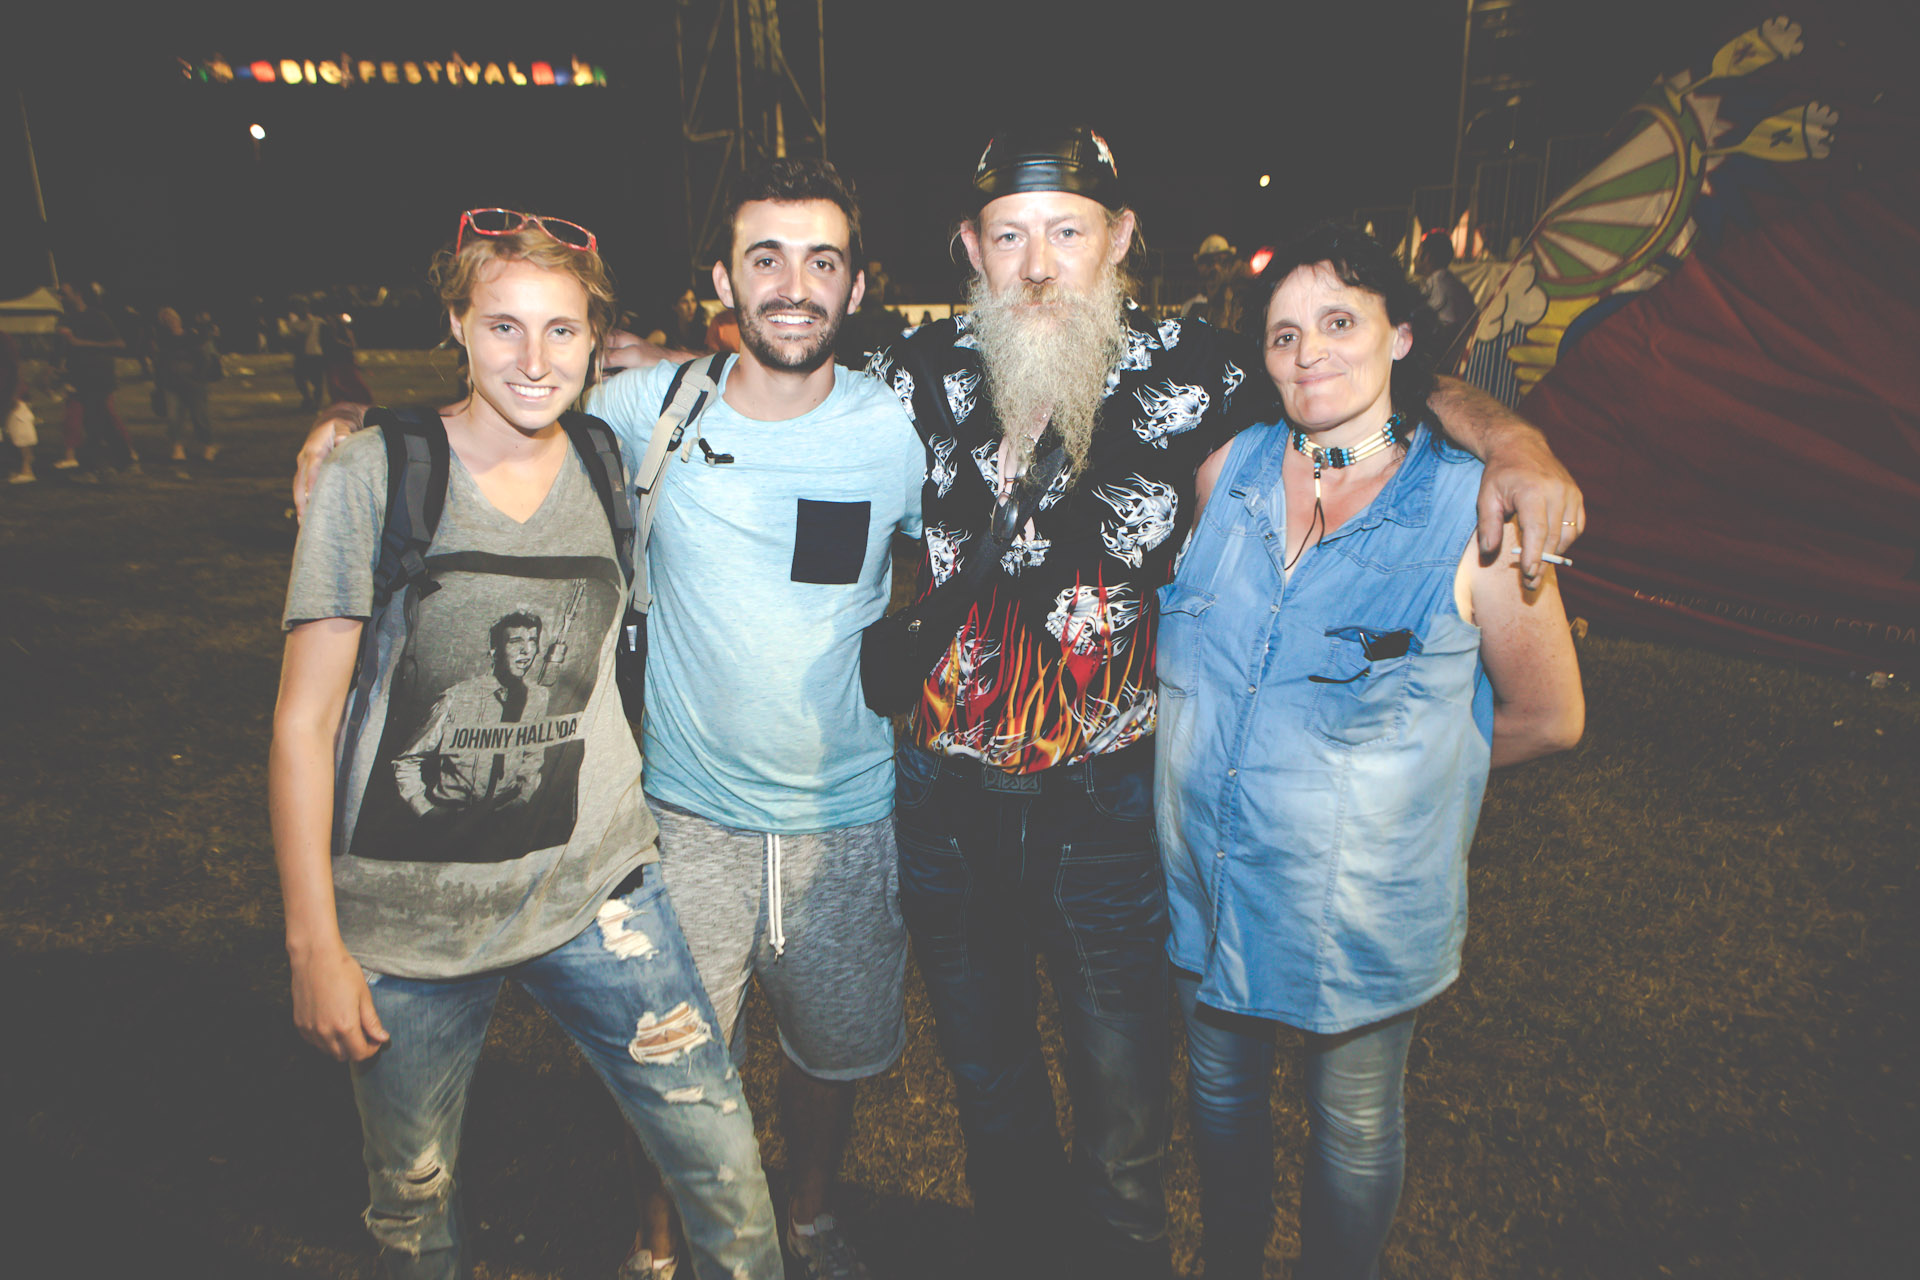 Les fans de Johnny Hallyday au BIG Festival, le 17 juillet 2015 - photo 12